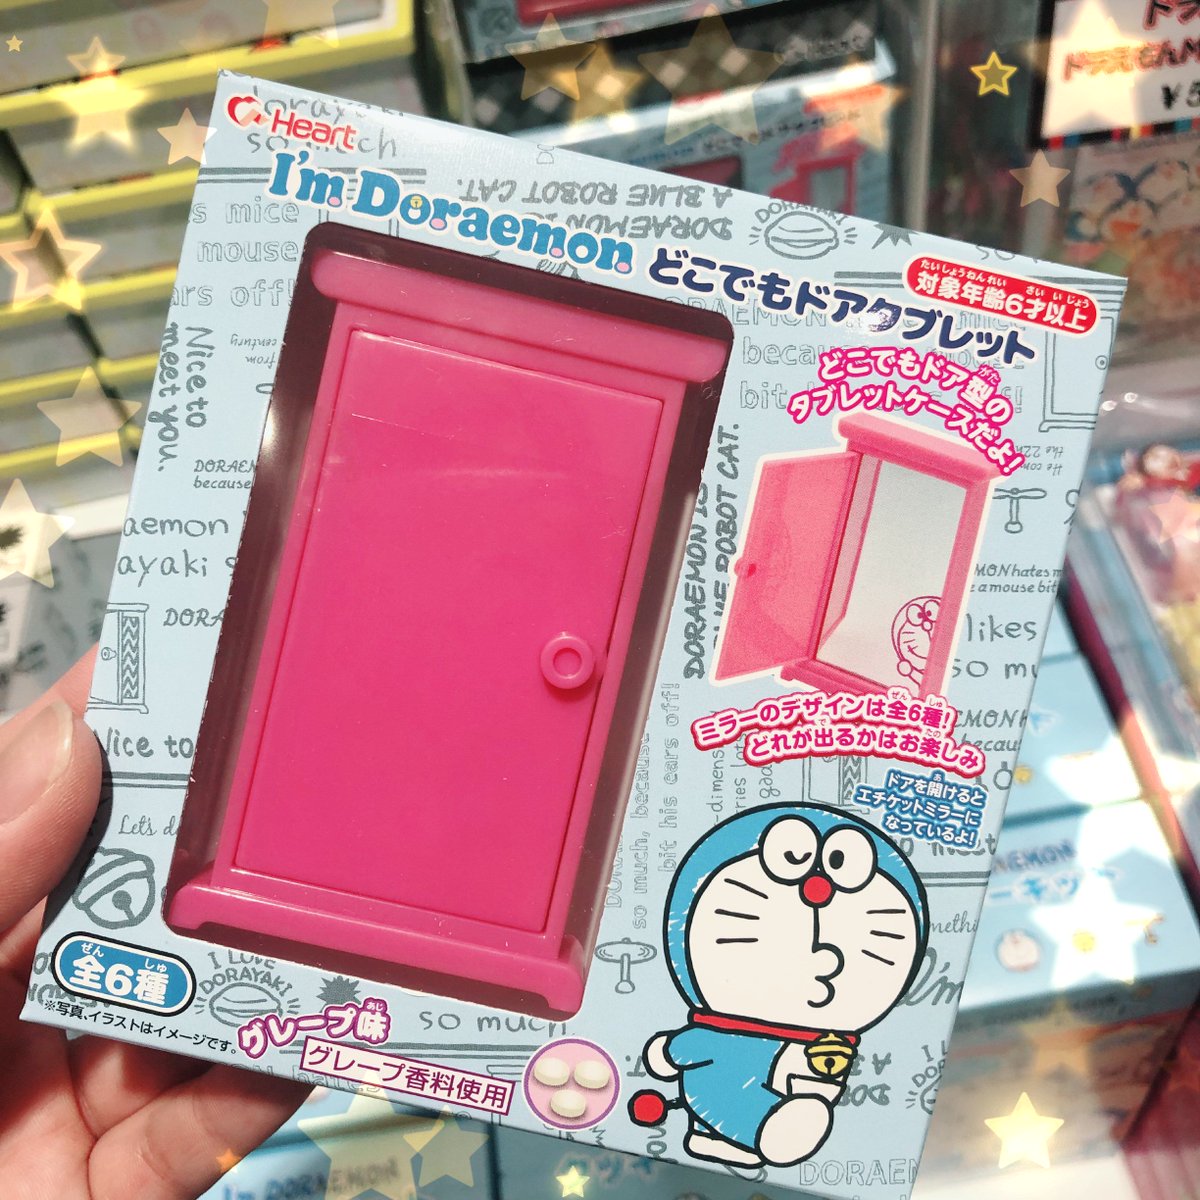 テレビ局公式ショップ ツリービレッジ ドラえもん より 新商品入荷しました I M Doraemon どこでもドア タブレット こちらのタブレットケース 実はミラーになっている優れものです ぜひ ツリビレ にチェックして来て下さい ドラえもん